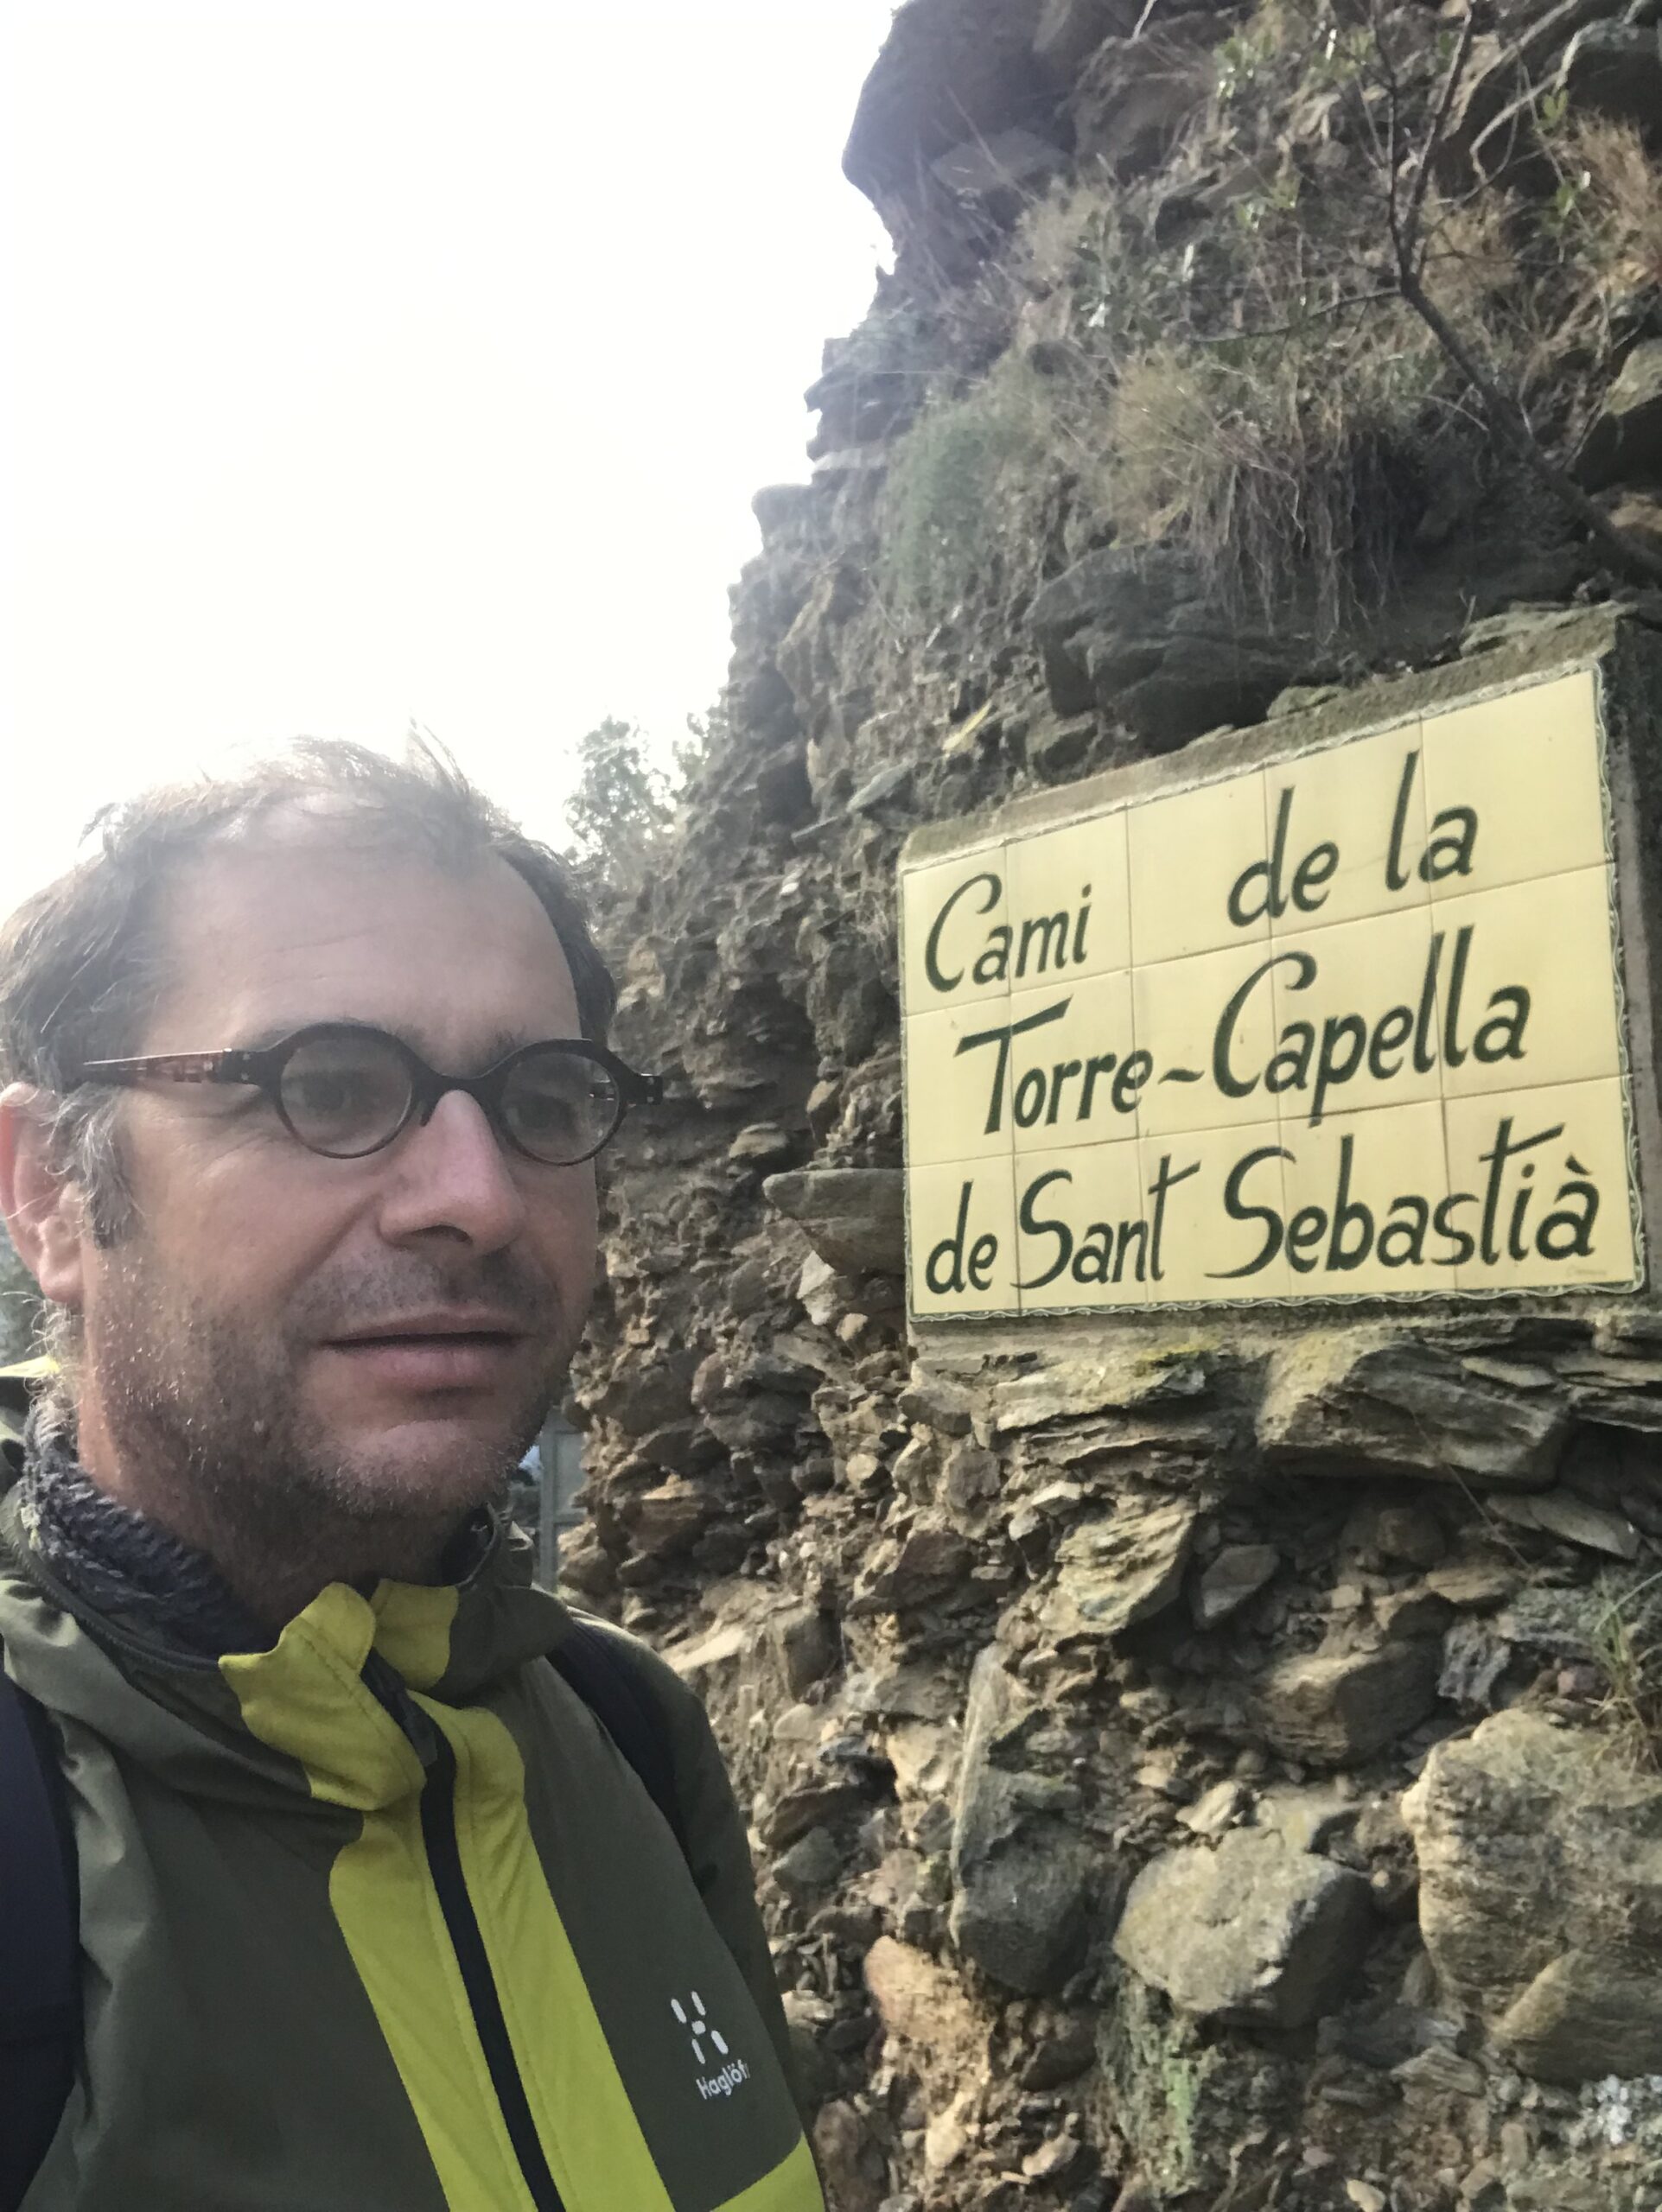 On the way from the torre-capella de Sant Sebastia to mar de la selva